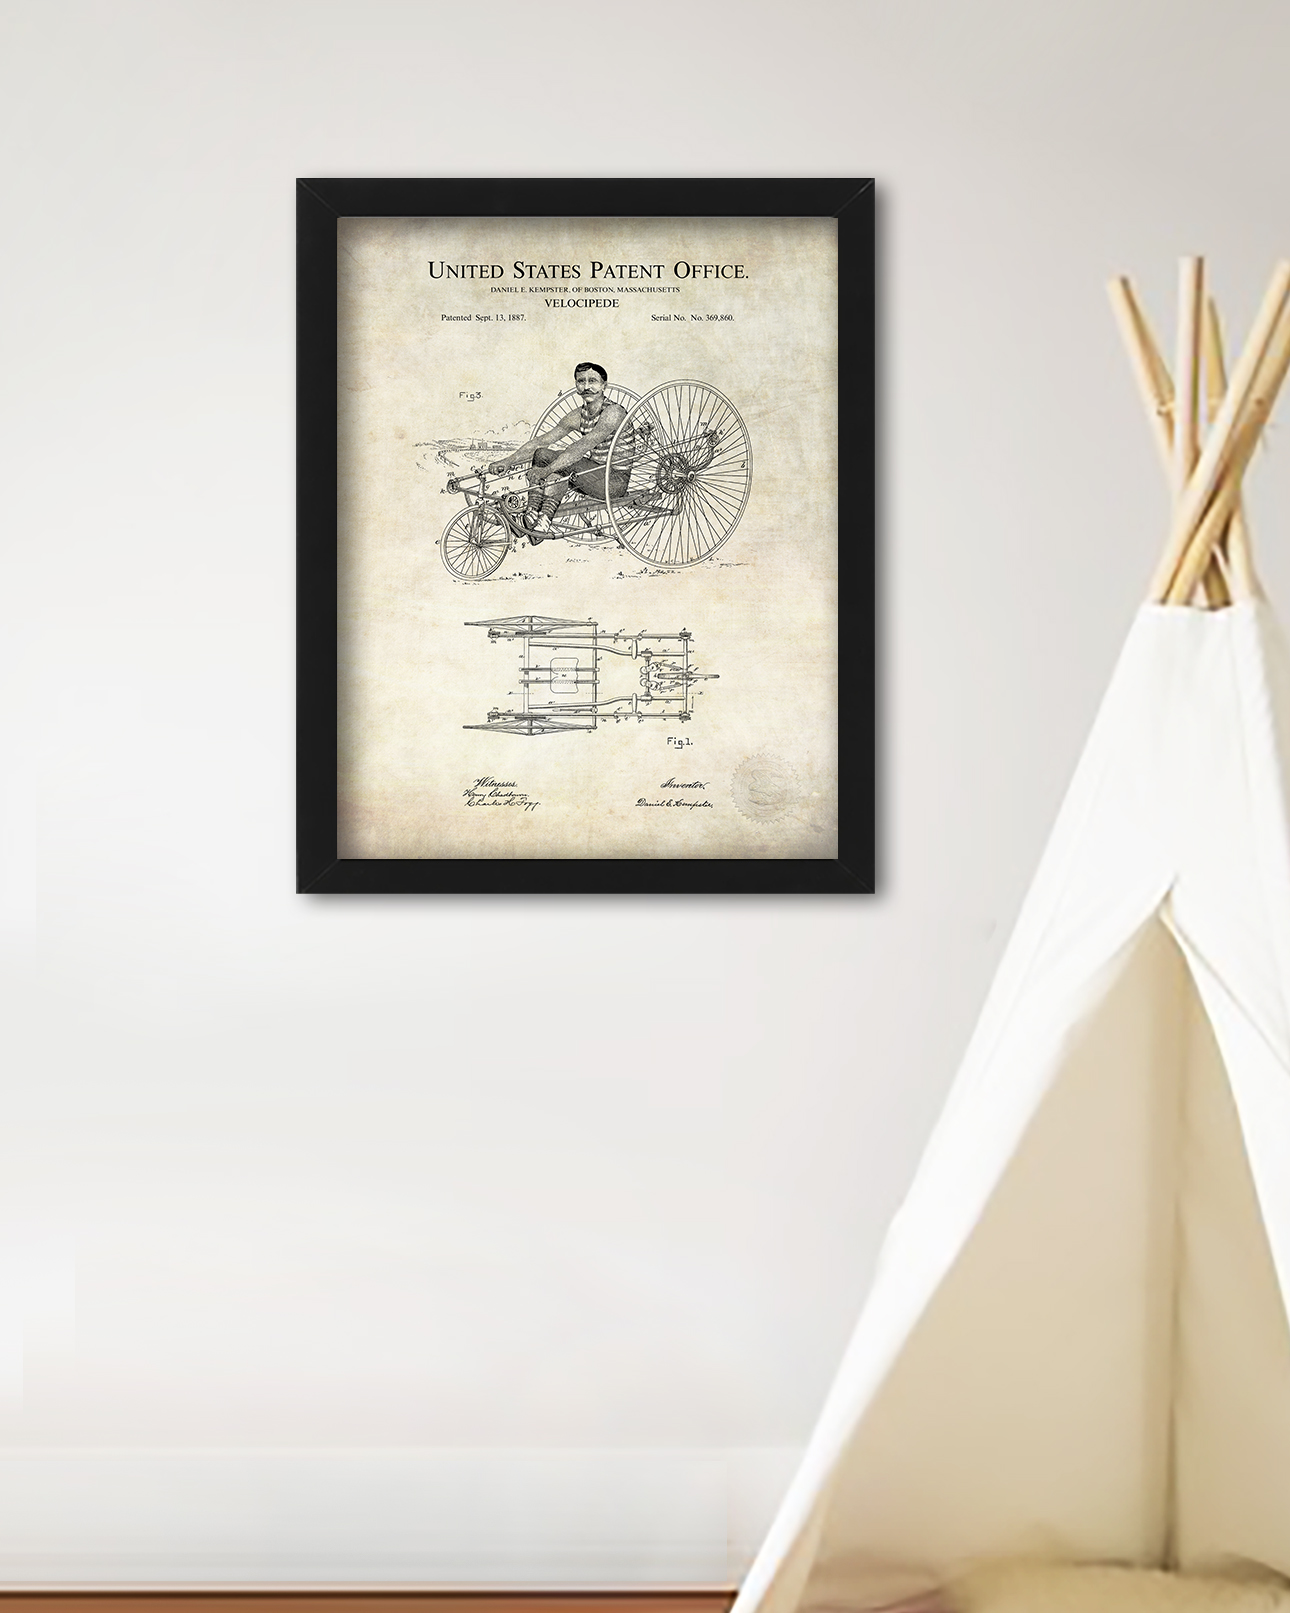 Velocipede Design | 1887 Patent